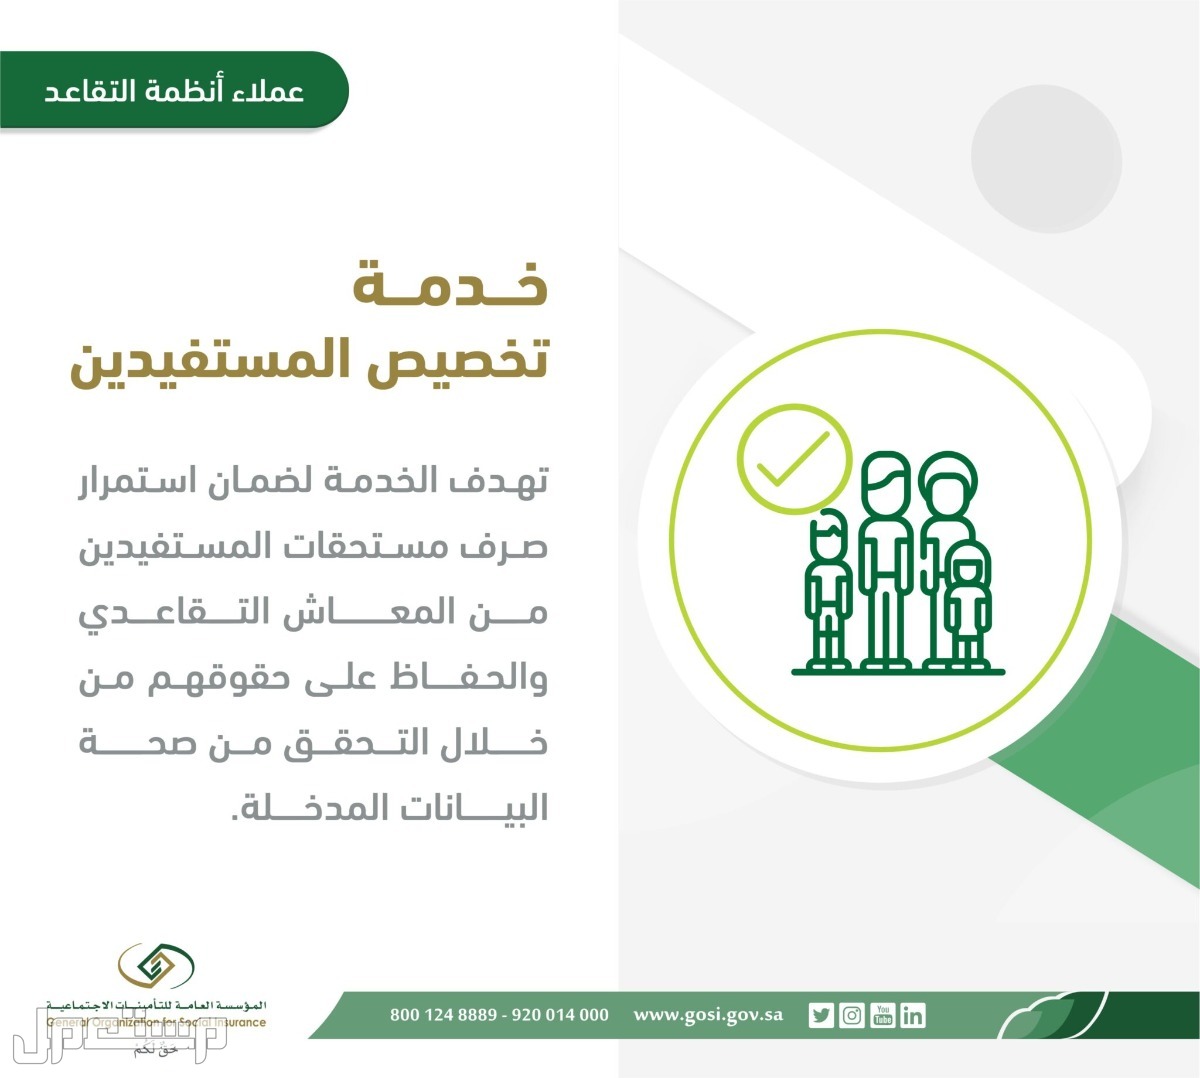 تعرف على خطوات تقديم طلب تخصيص المستفيدين المستحقين لتسوية المعاش في عمان خدمة تخصيص المستفيدين